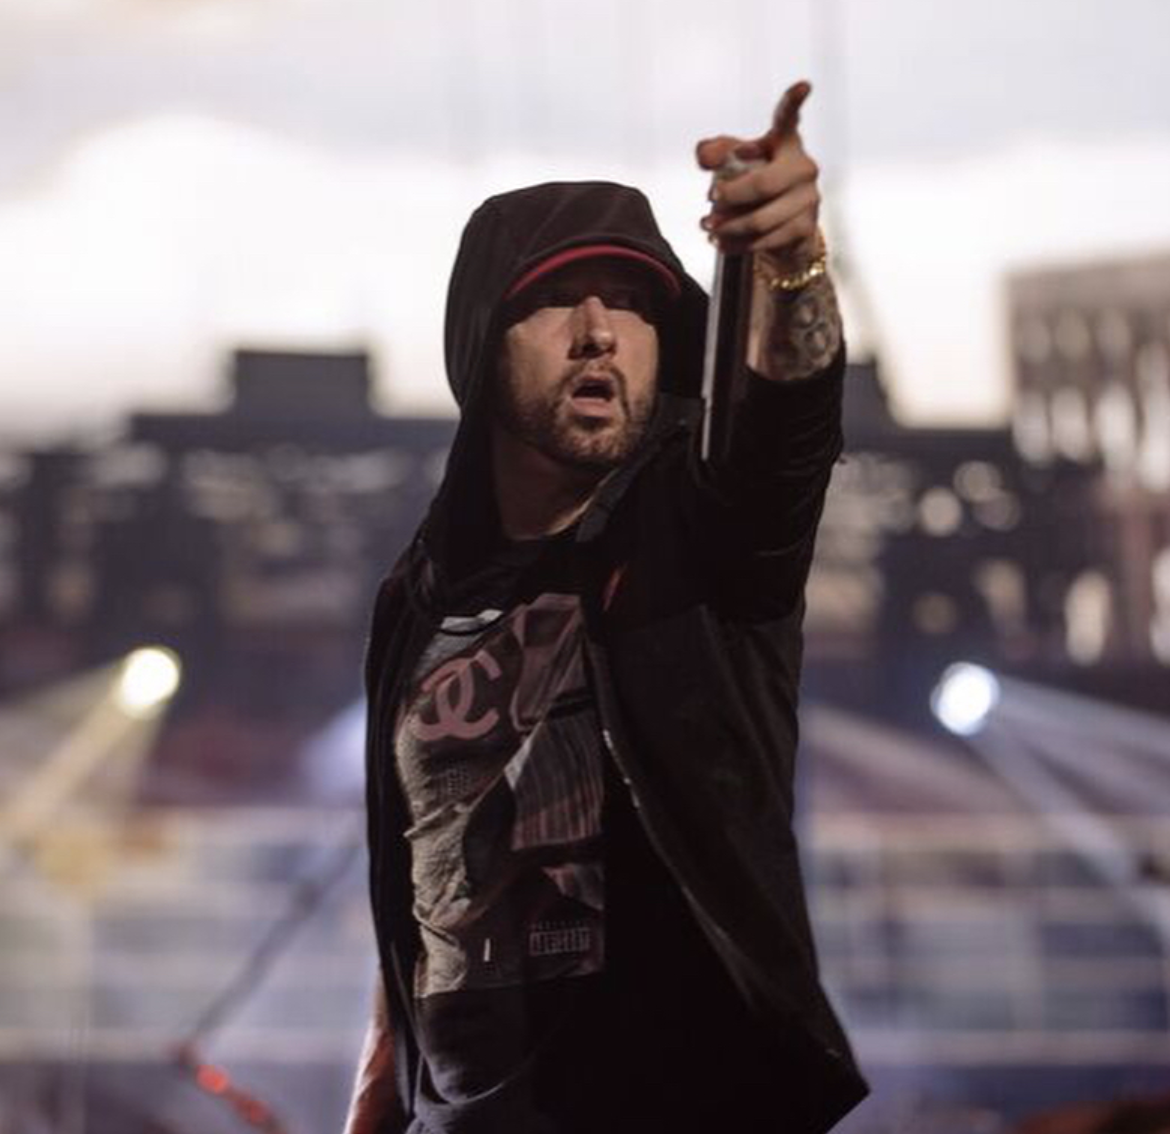 Arving fugtighed basen Eminem drops new album 'Kamikaze' overnight and it's brutal | City Slang